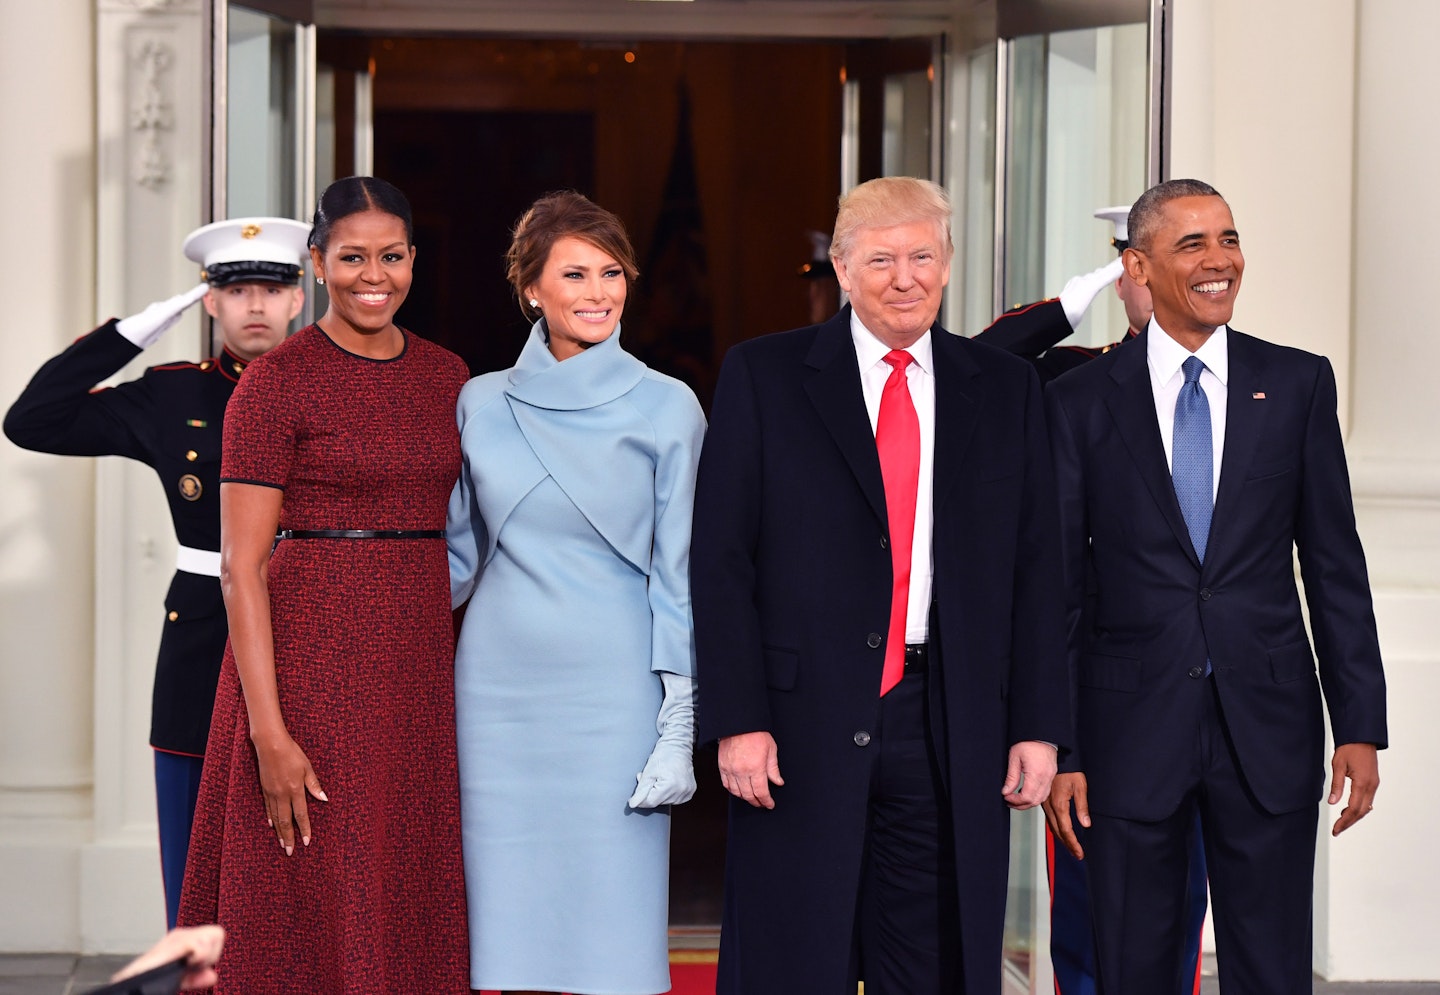 Michelle Obama image